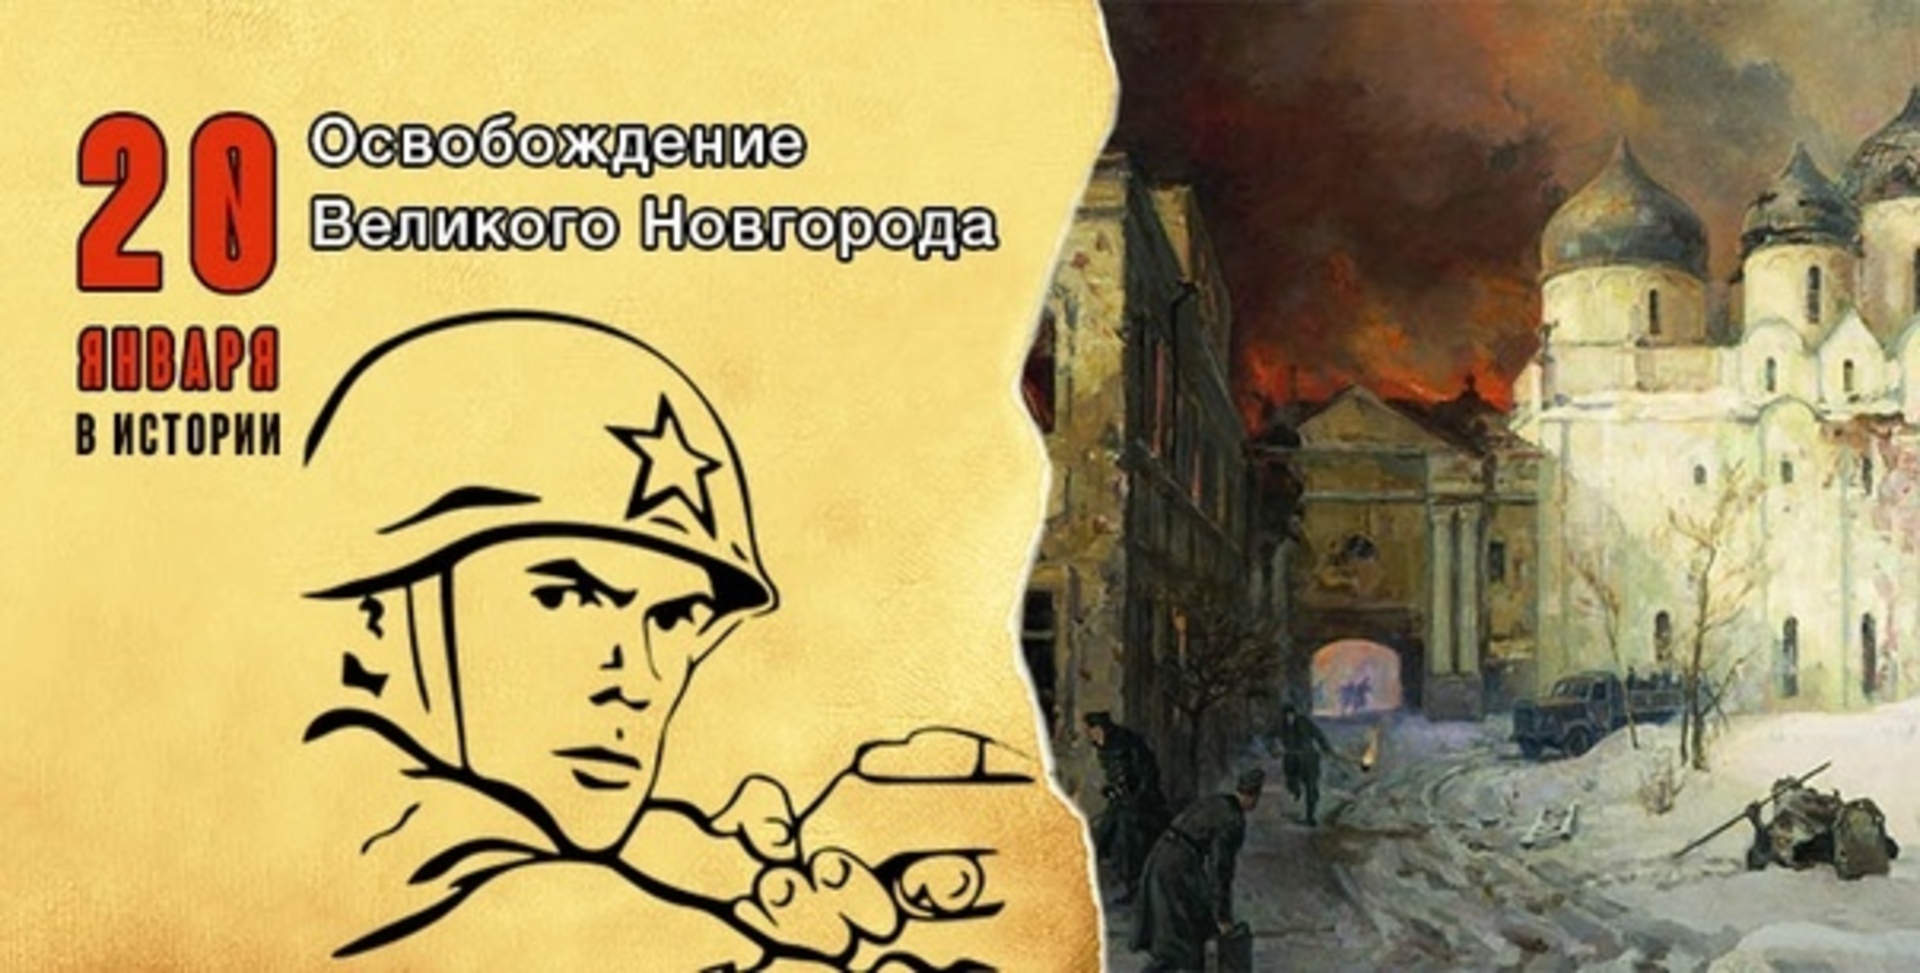 Освобождение Великого Новгорода 20 января